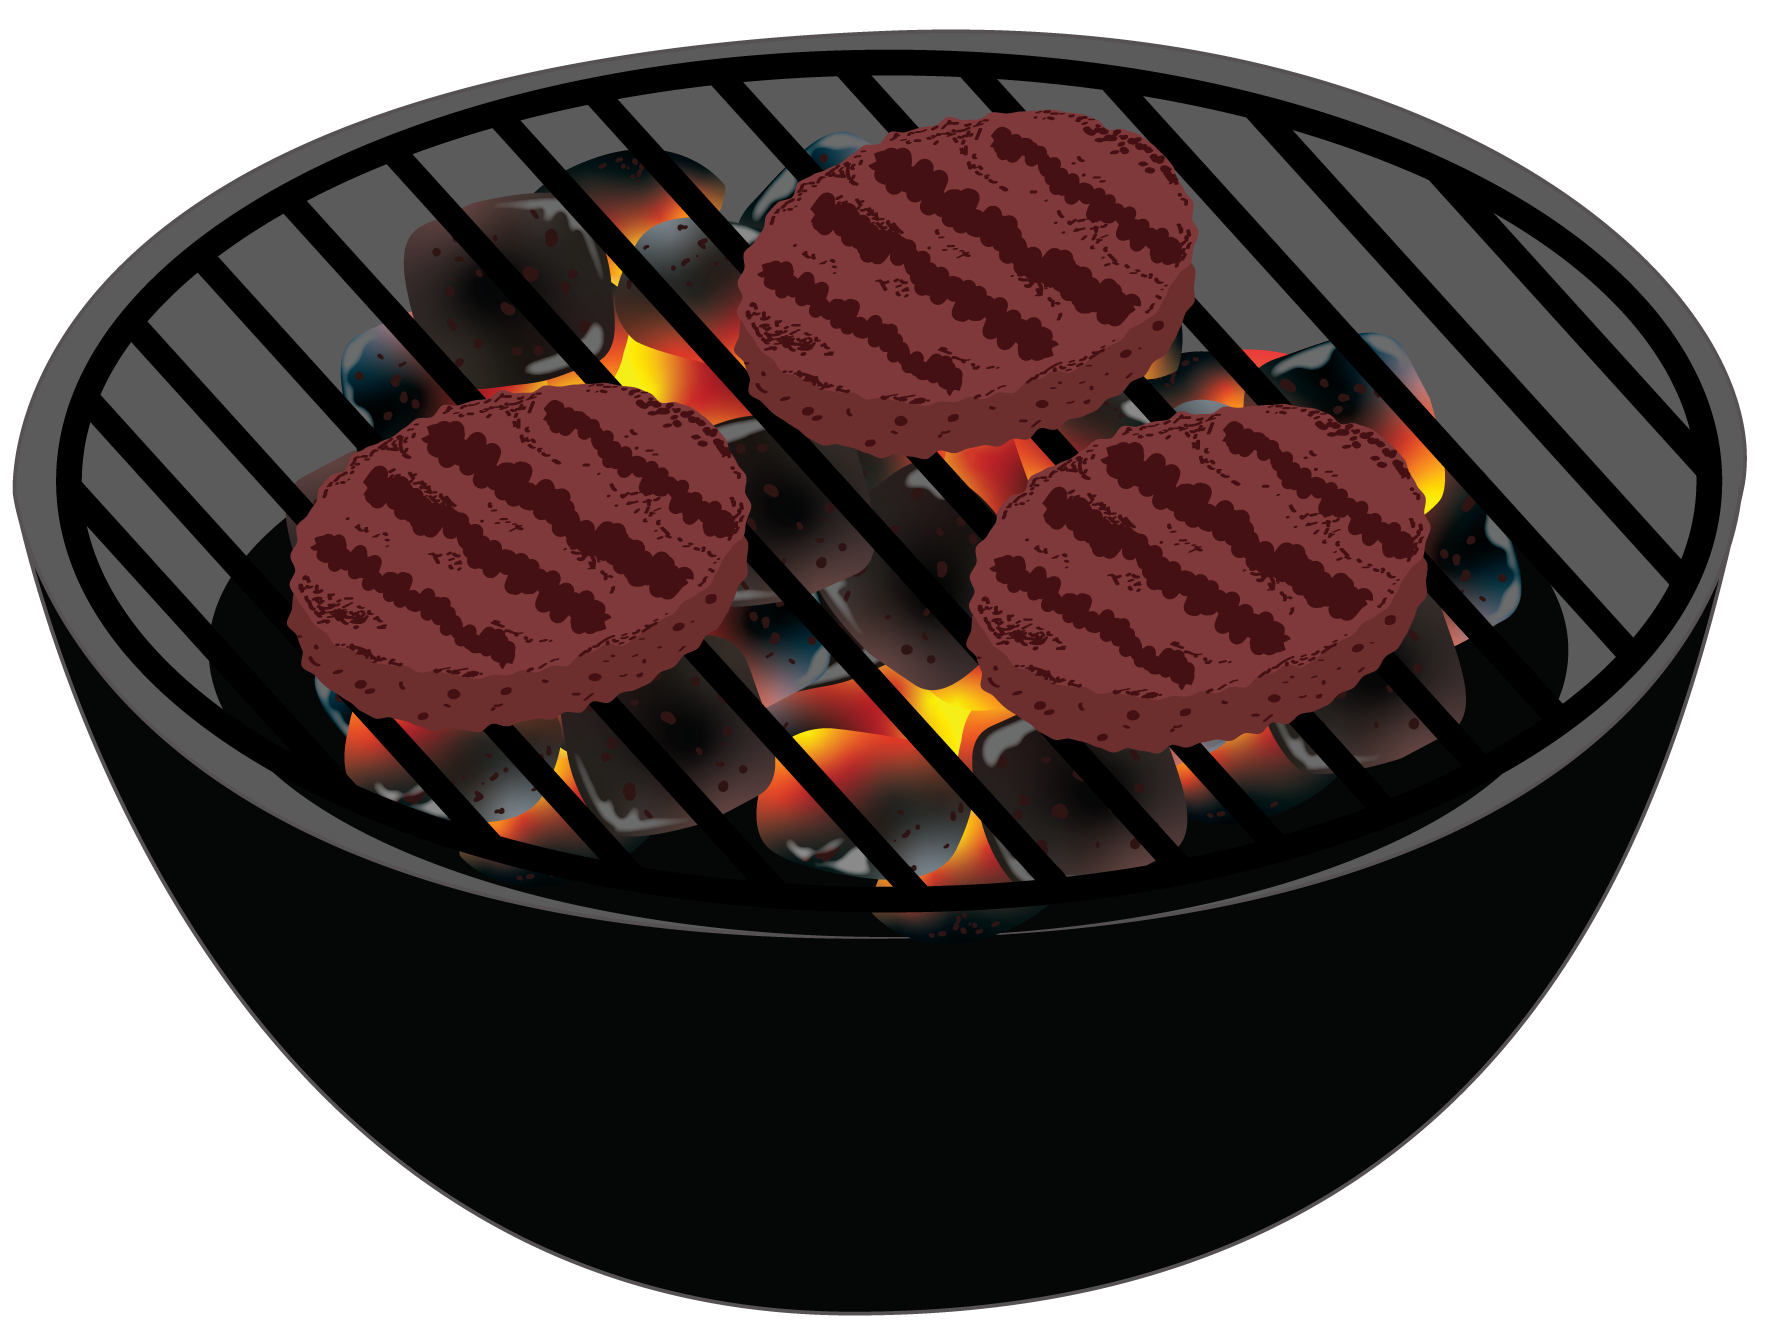 Digital illustration of outdoor grill